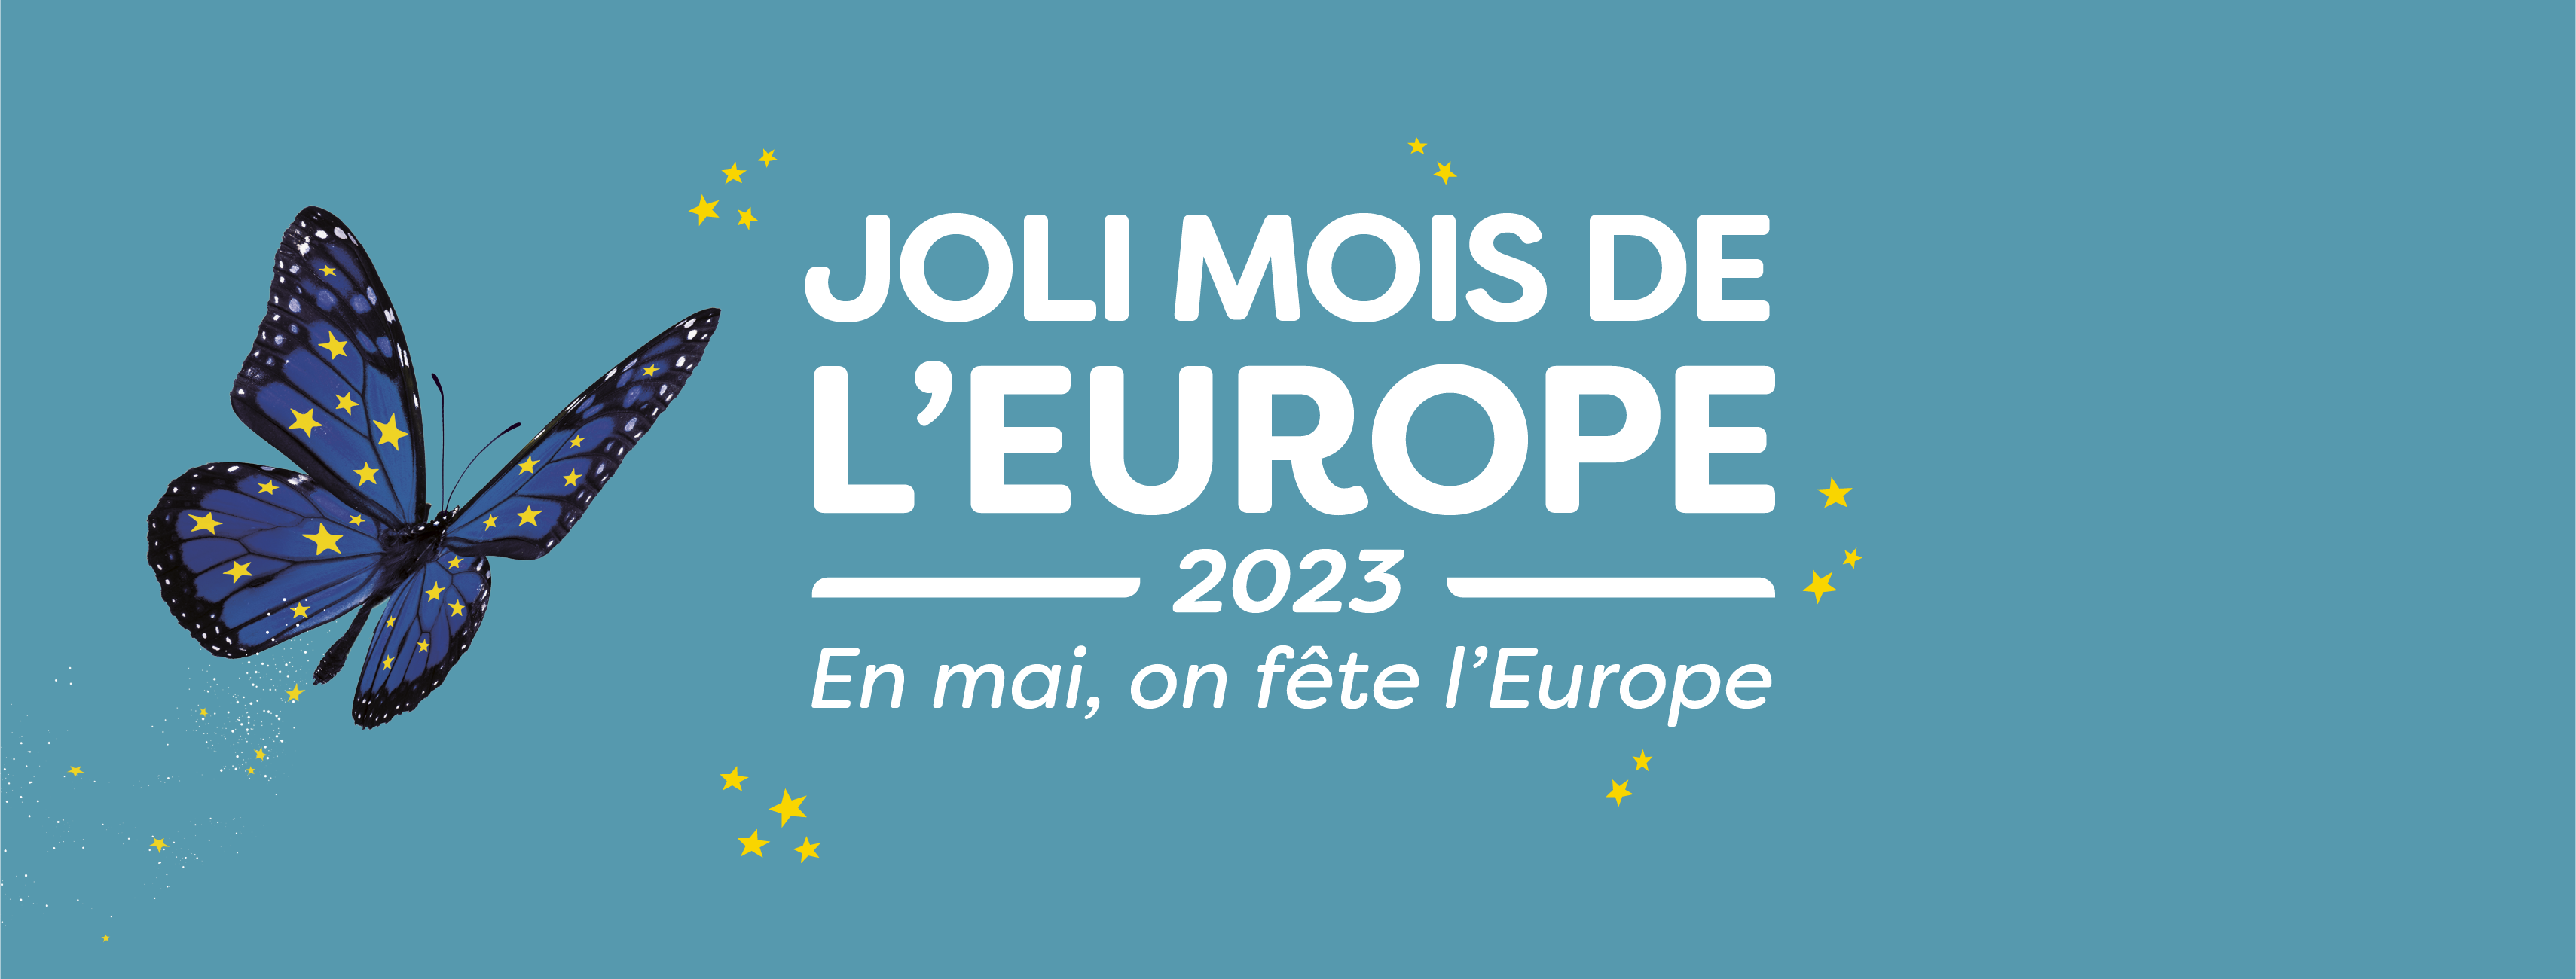 Le Joli Mois de l'Europe 2023 | L'Europe s'engage en France, le portail des  Fonds européens